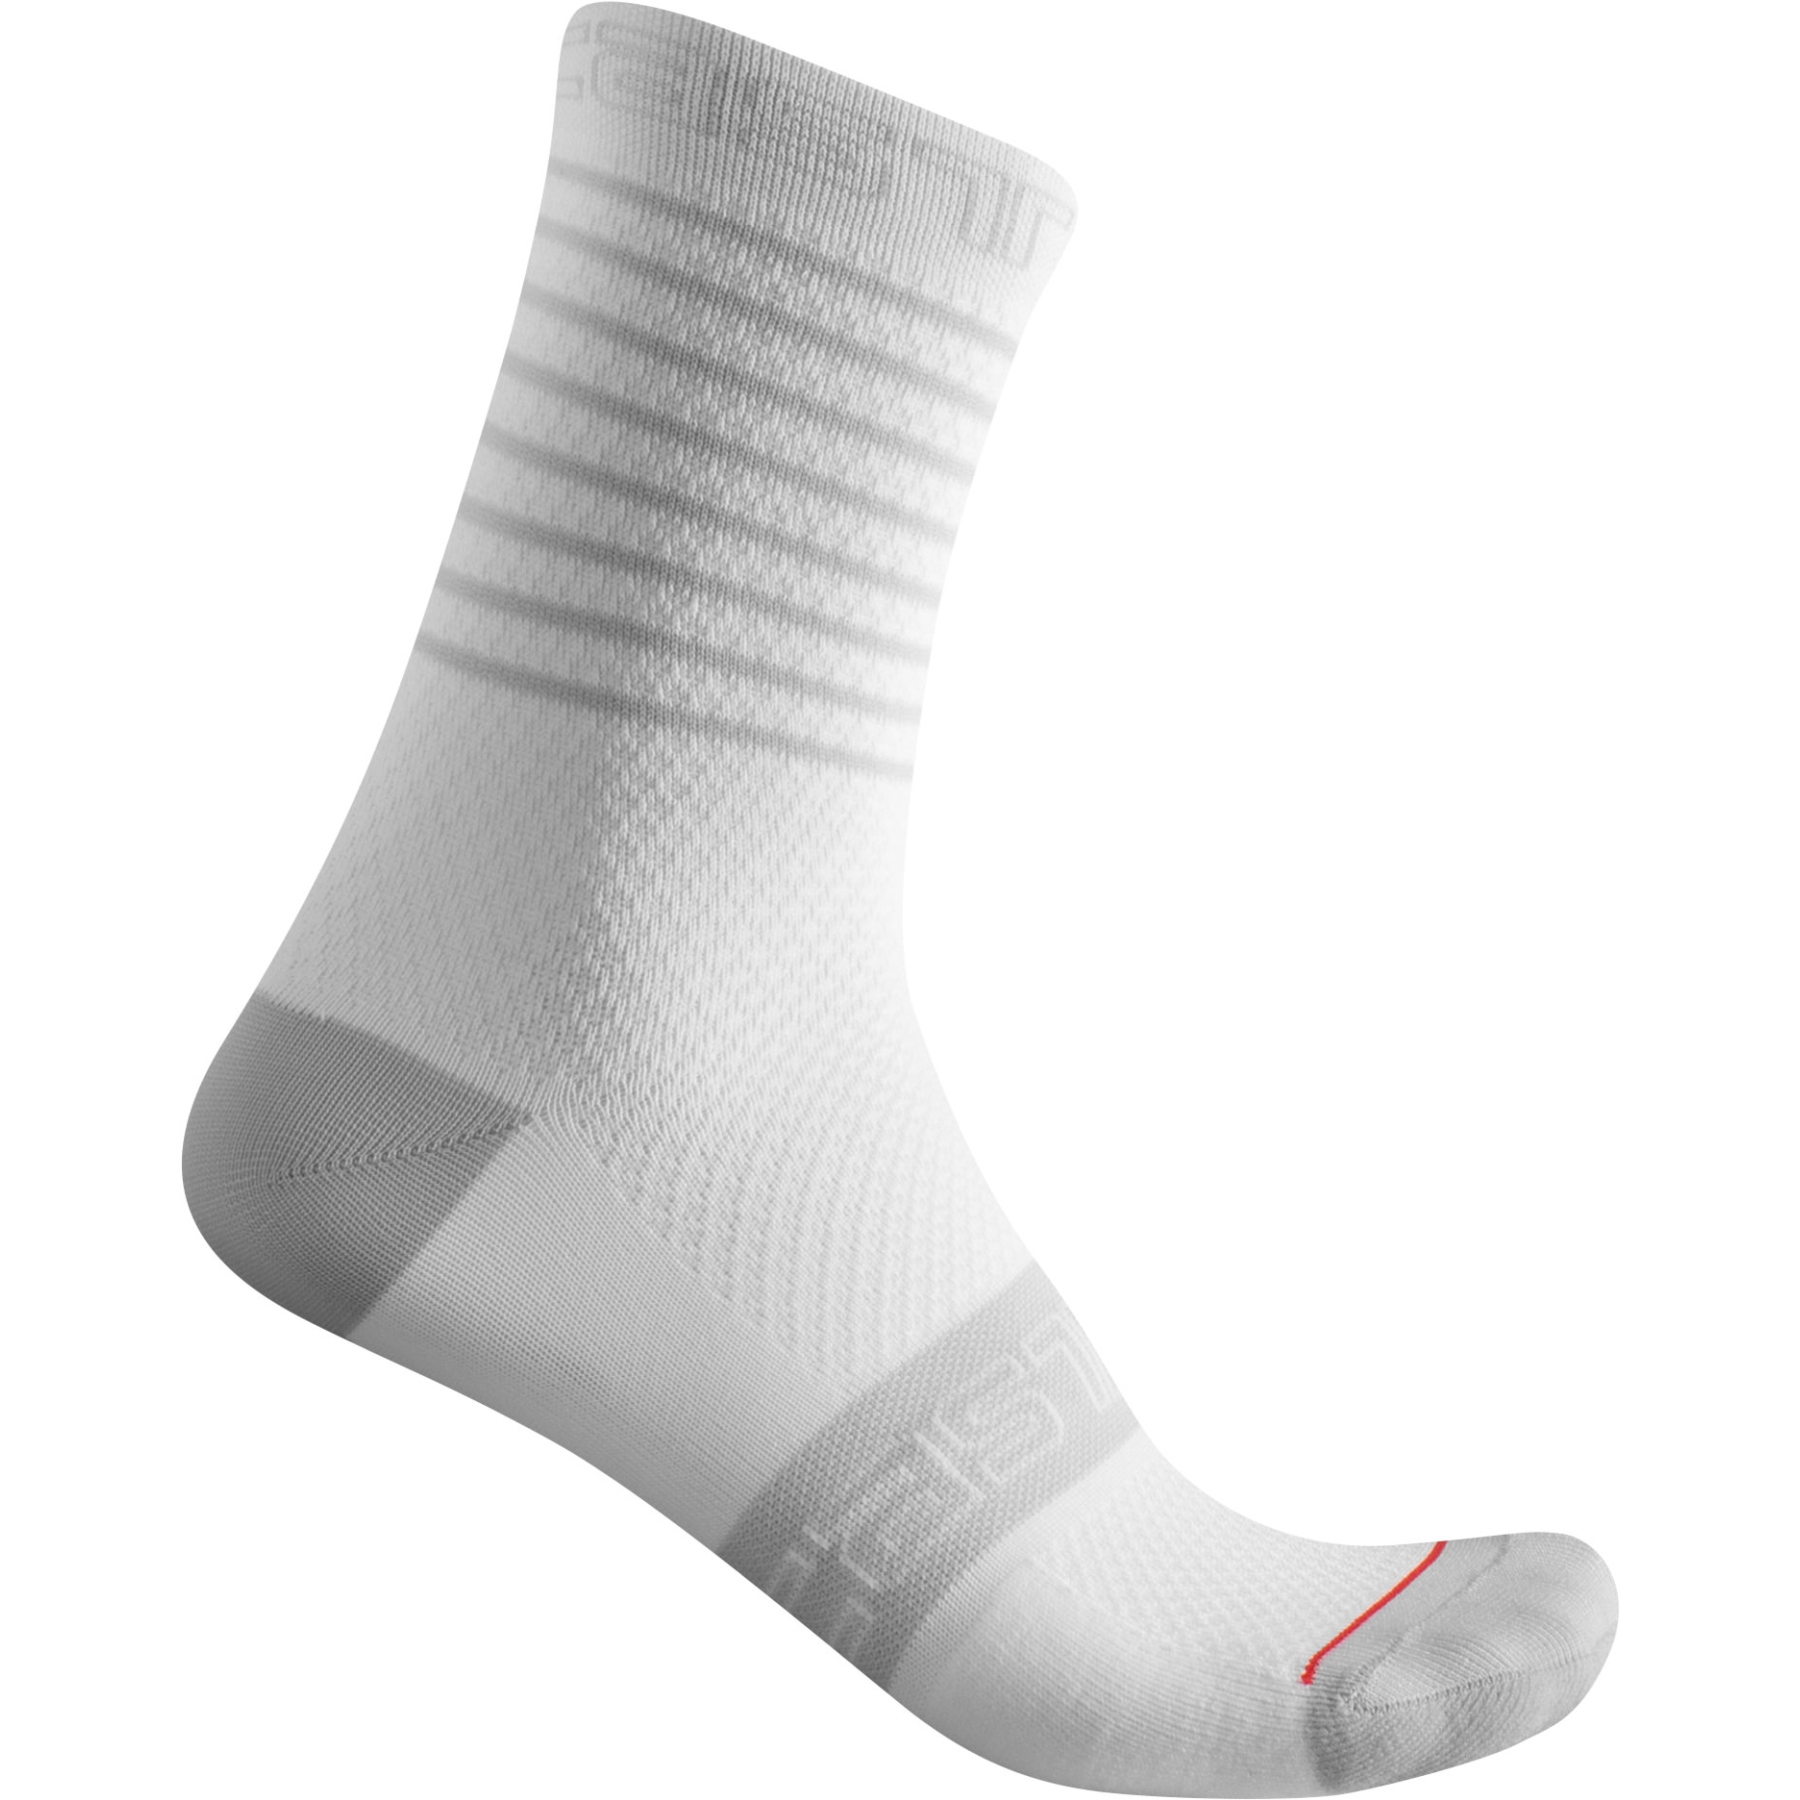 Produktbild von Castelli Superleggera 12 Socken Damen - weiß 001